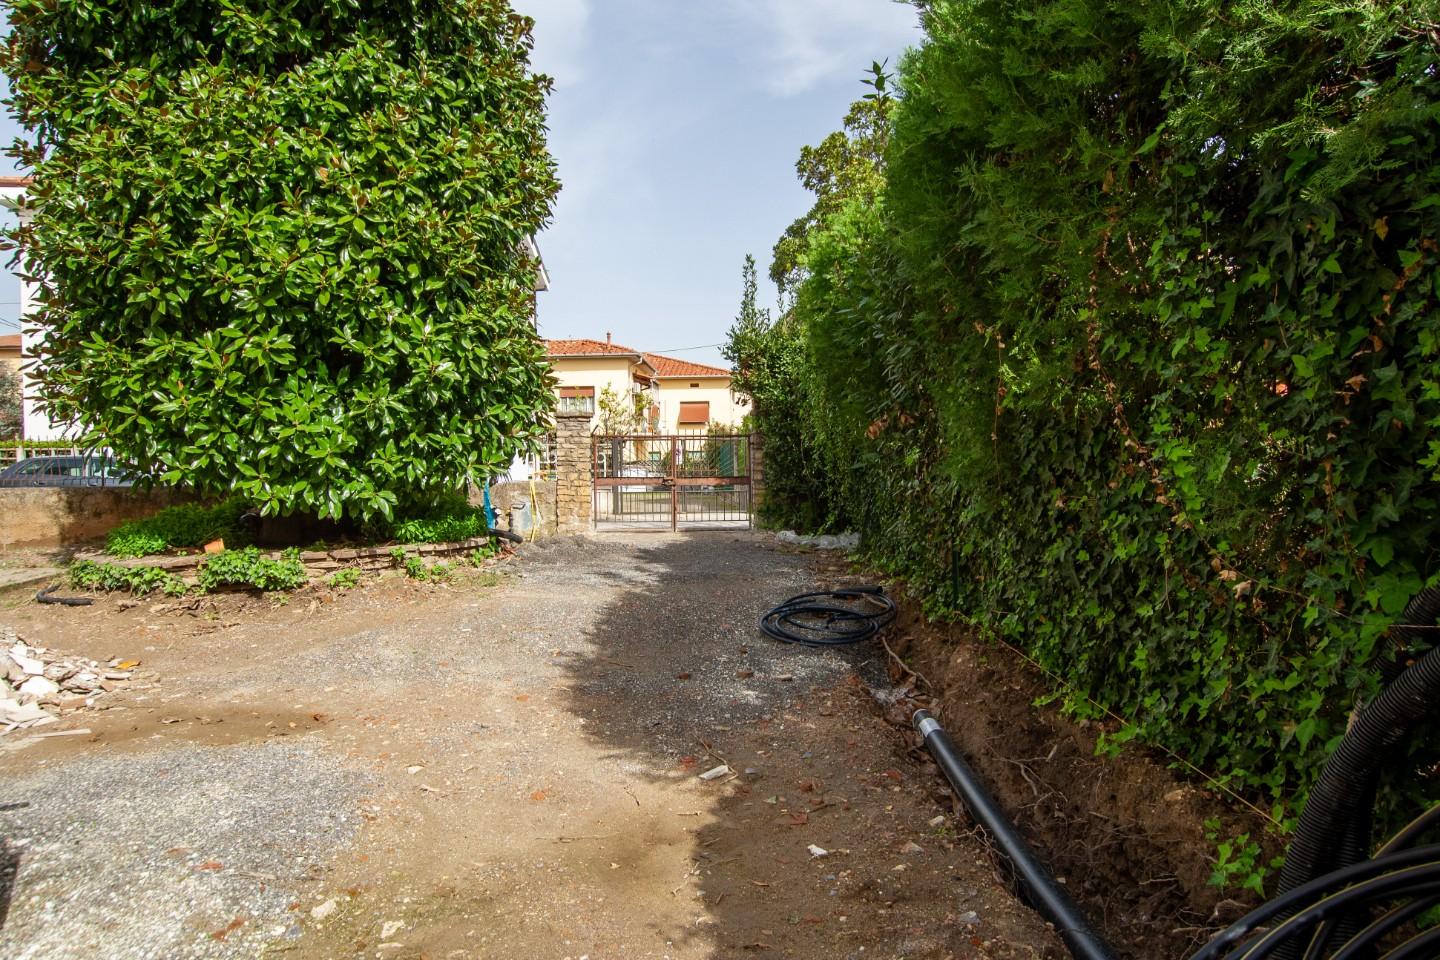 Villa con giardino, Pisa don bosco - battelli